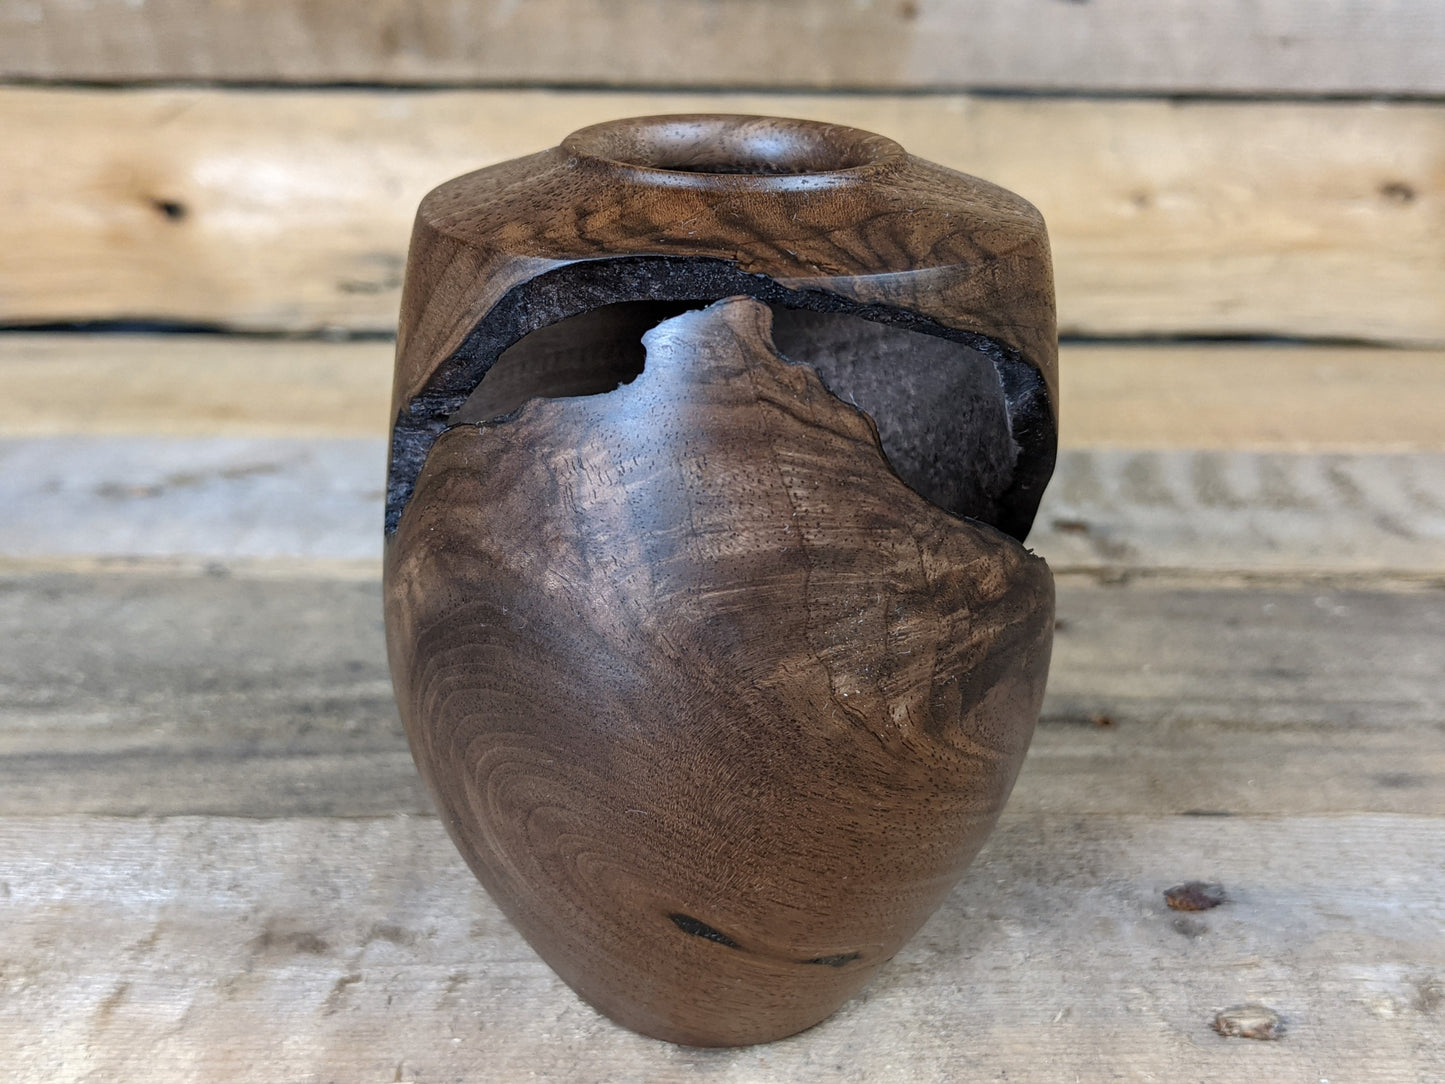 Tiny black walnut dry vase